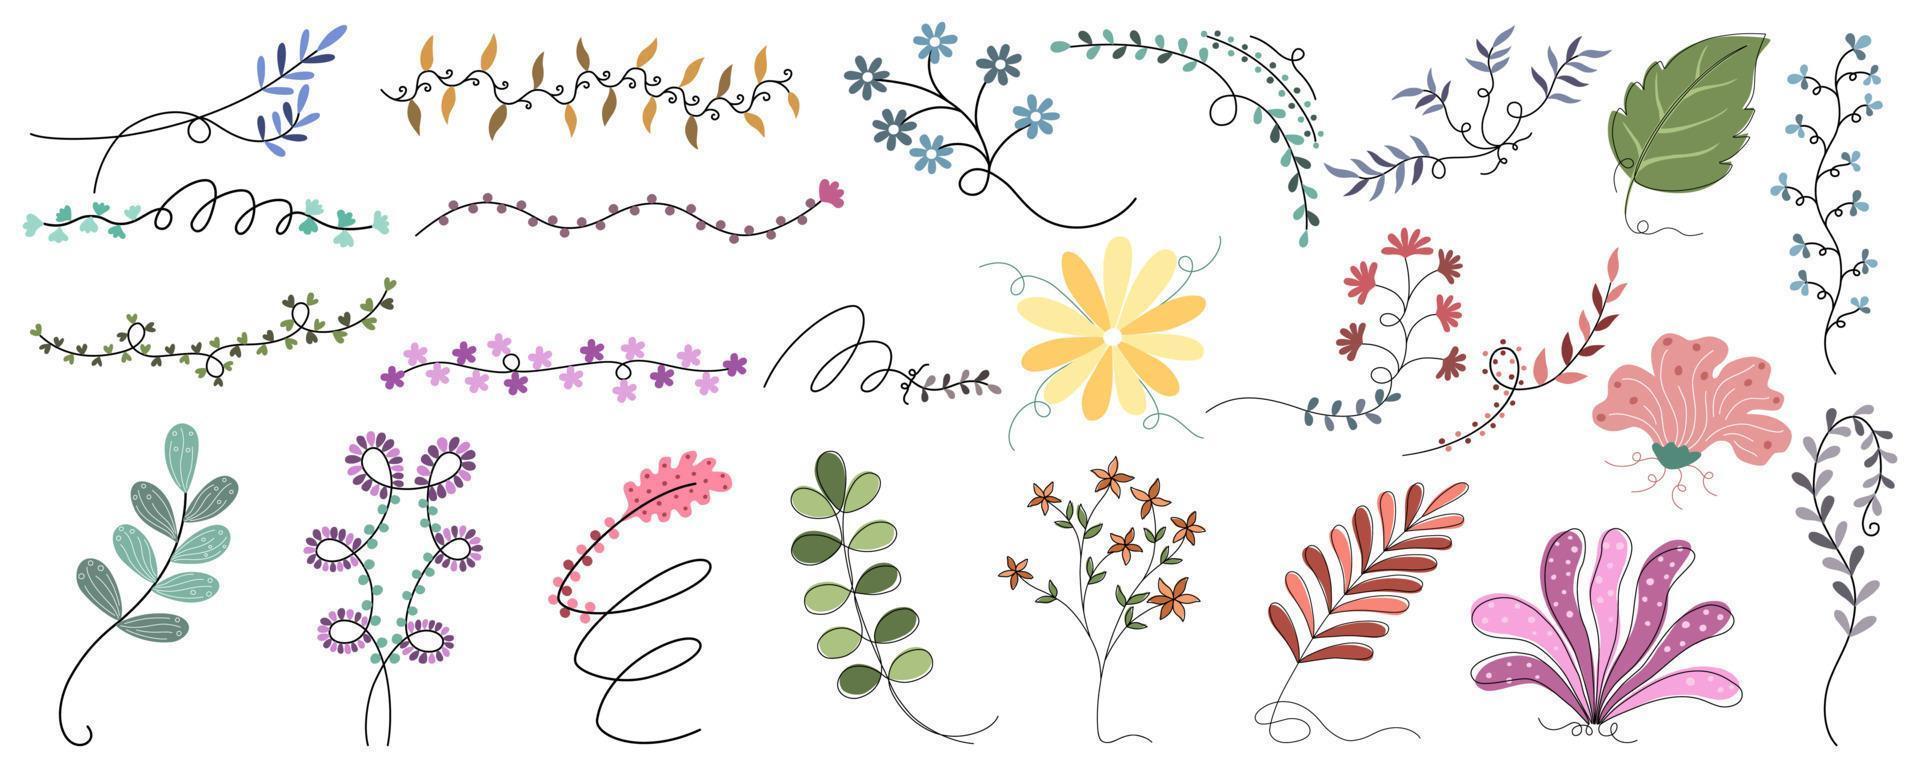 ensemble d'images vectorielles de fleurs et de feuilles conçues dans un style doodle pour la conception de cartes, les décorations sur le thème du printemps, le scrapbooking, les décorations de cadre, les motifs en papier, la carte de mariage, l'impression numérique, etc. vecteur